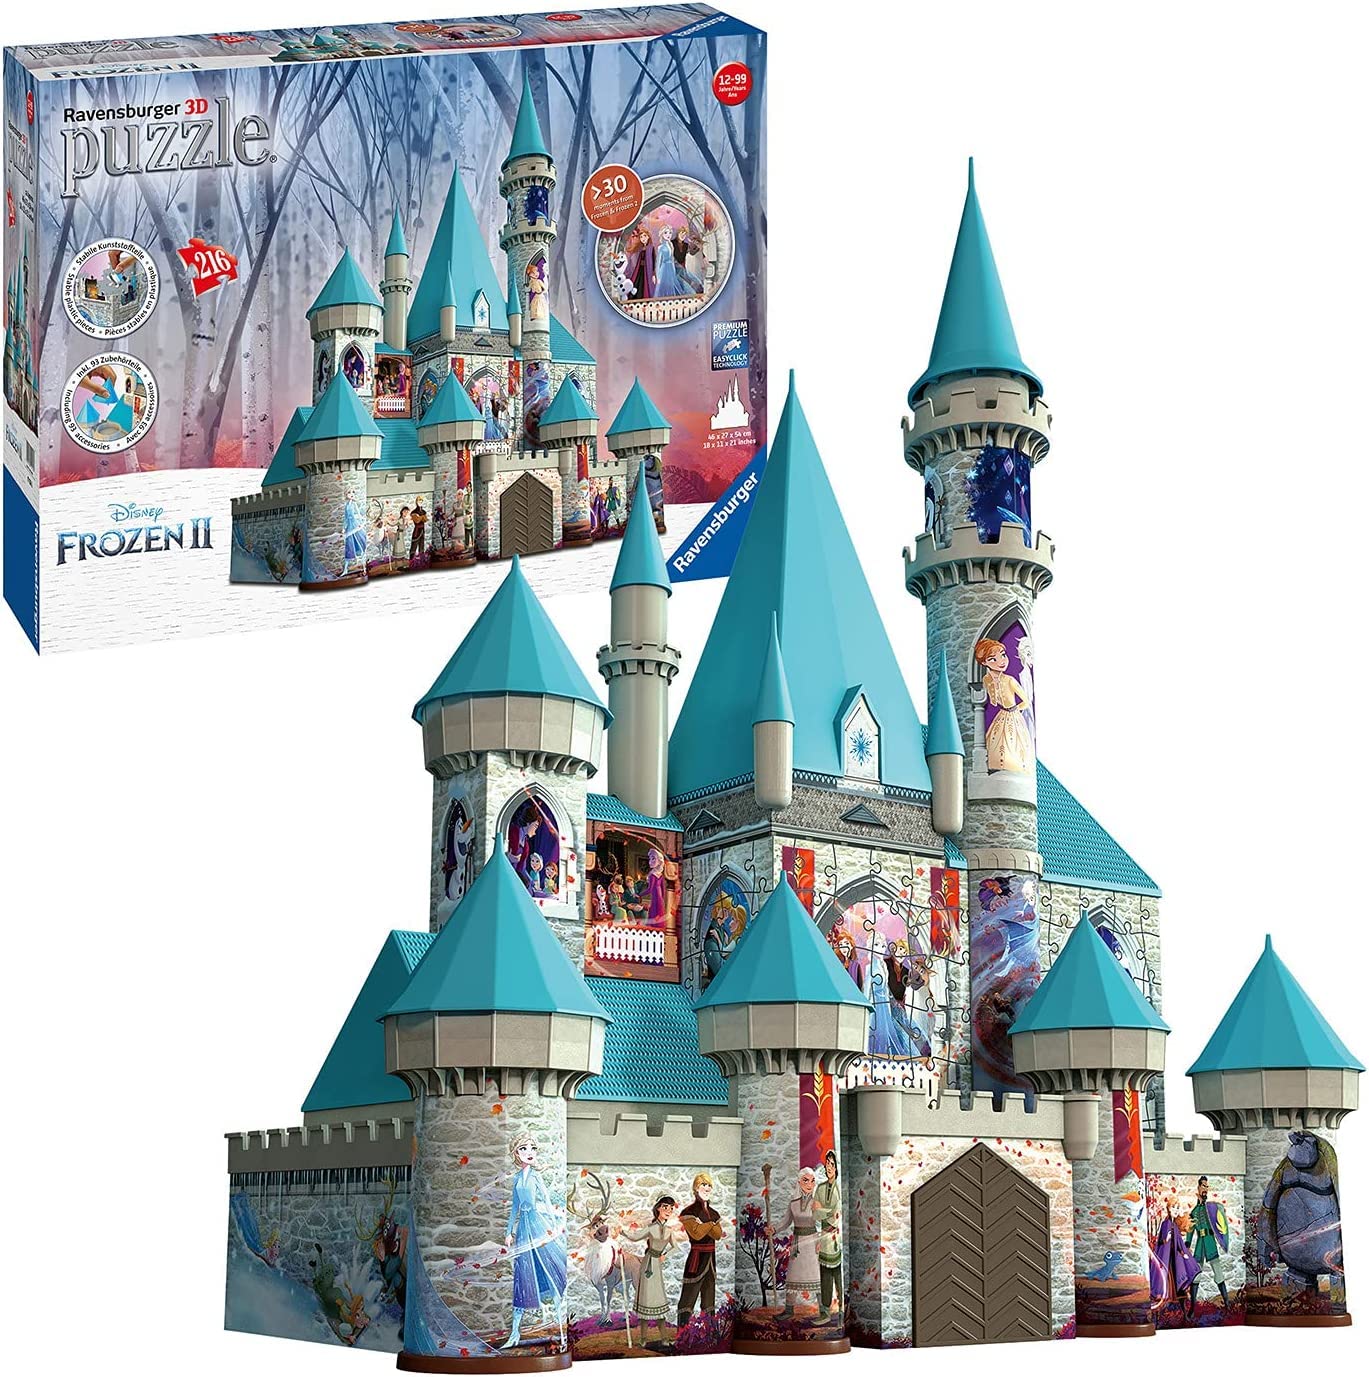 Ravensburger 3D Puzzle 11156 - Disney Frozen 2 Schloss - 216 Teile - Für alle Eisköniginnen Fans ab 10 Jahren